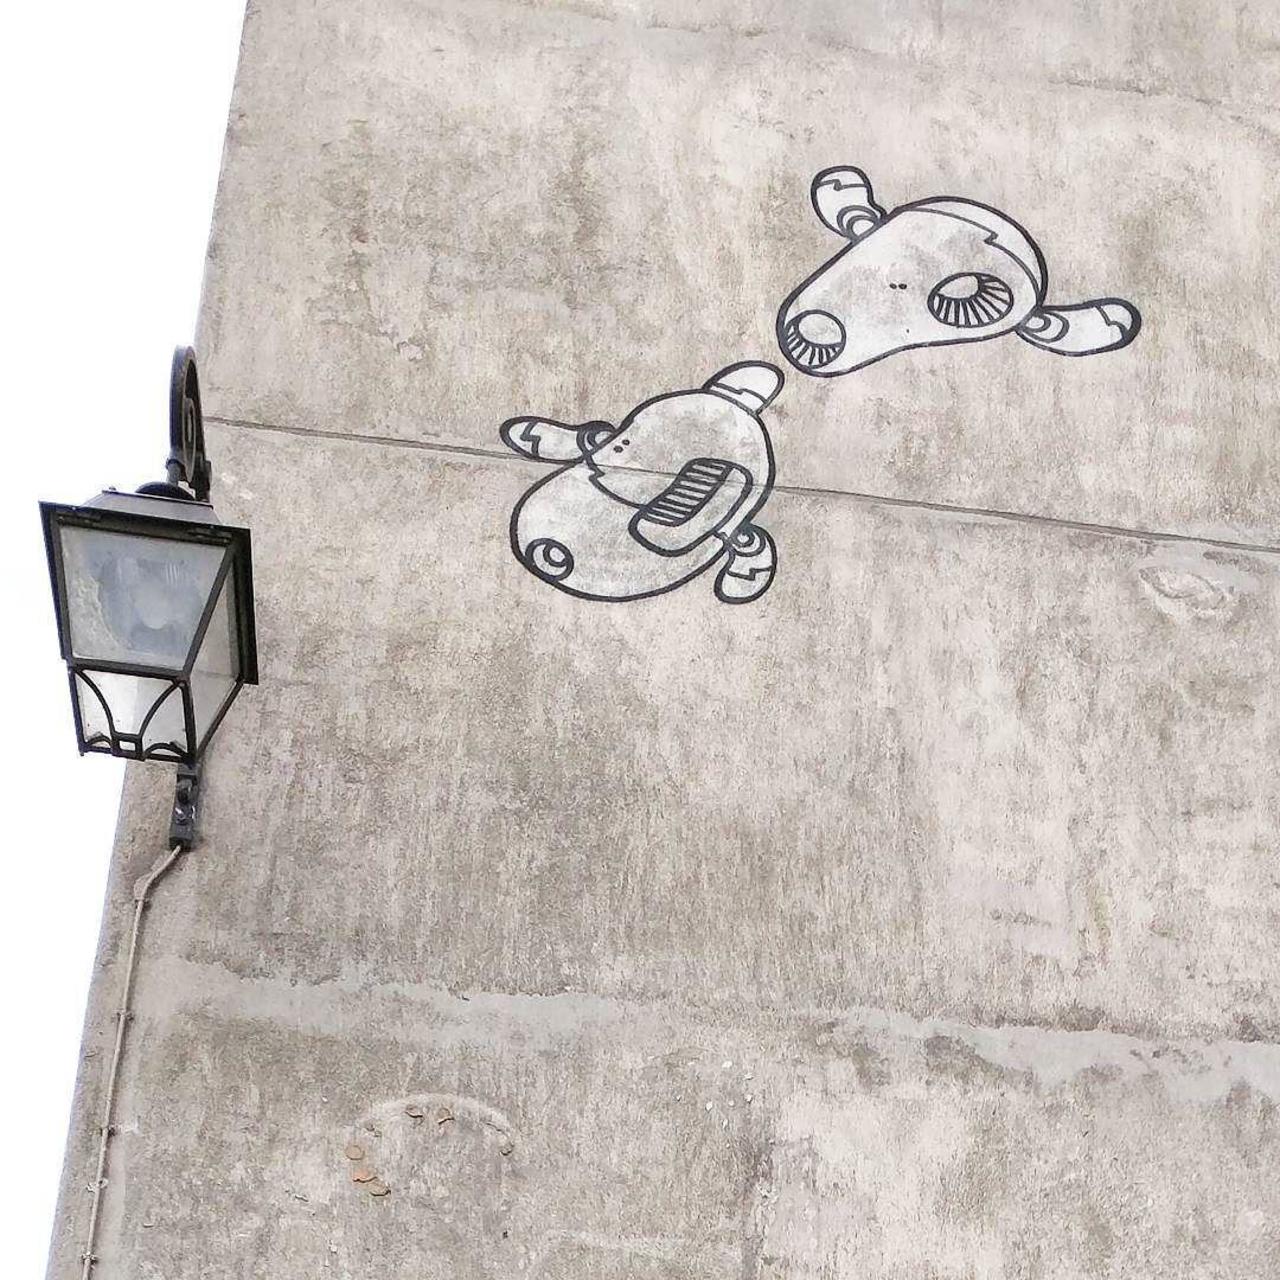 #Paris #graffiti photo by @alphaquadra http://ift.tt/1hiVrNB #StreetArt http://t.co/BAUsNPNEZI